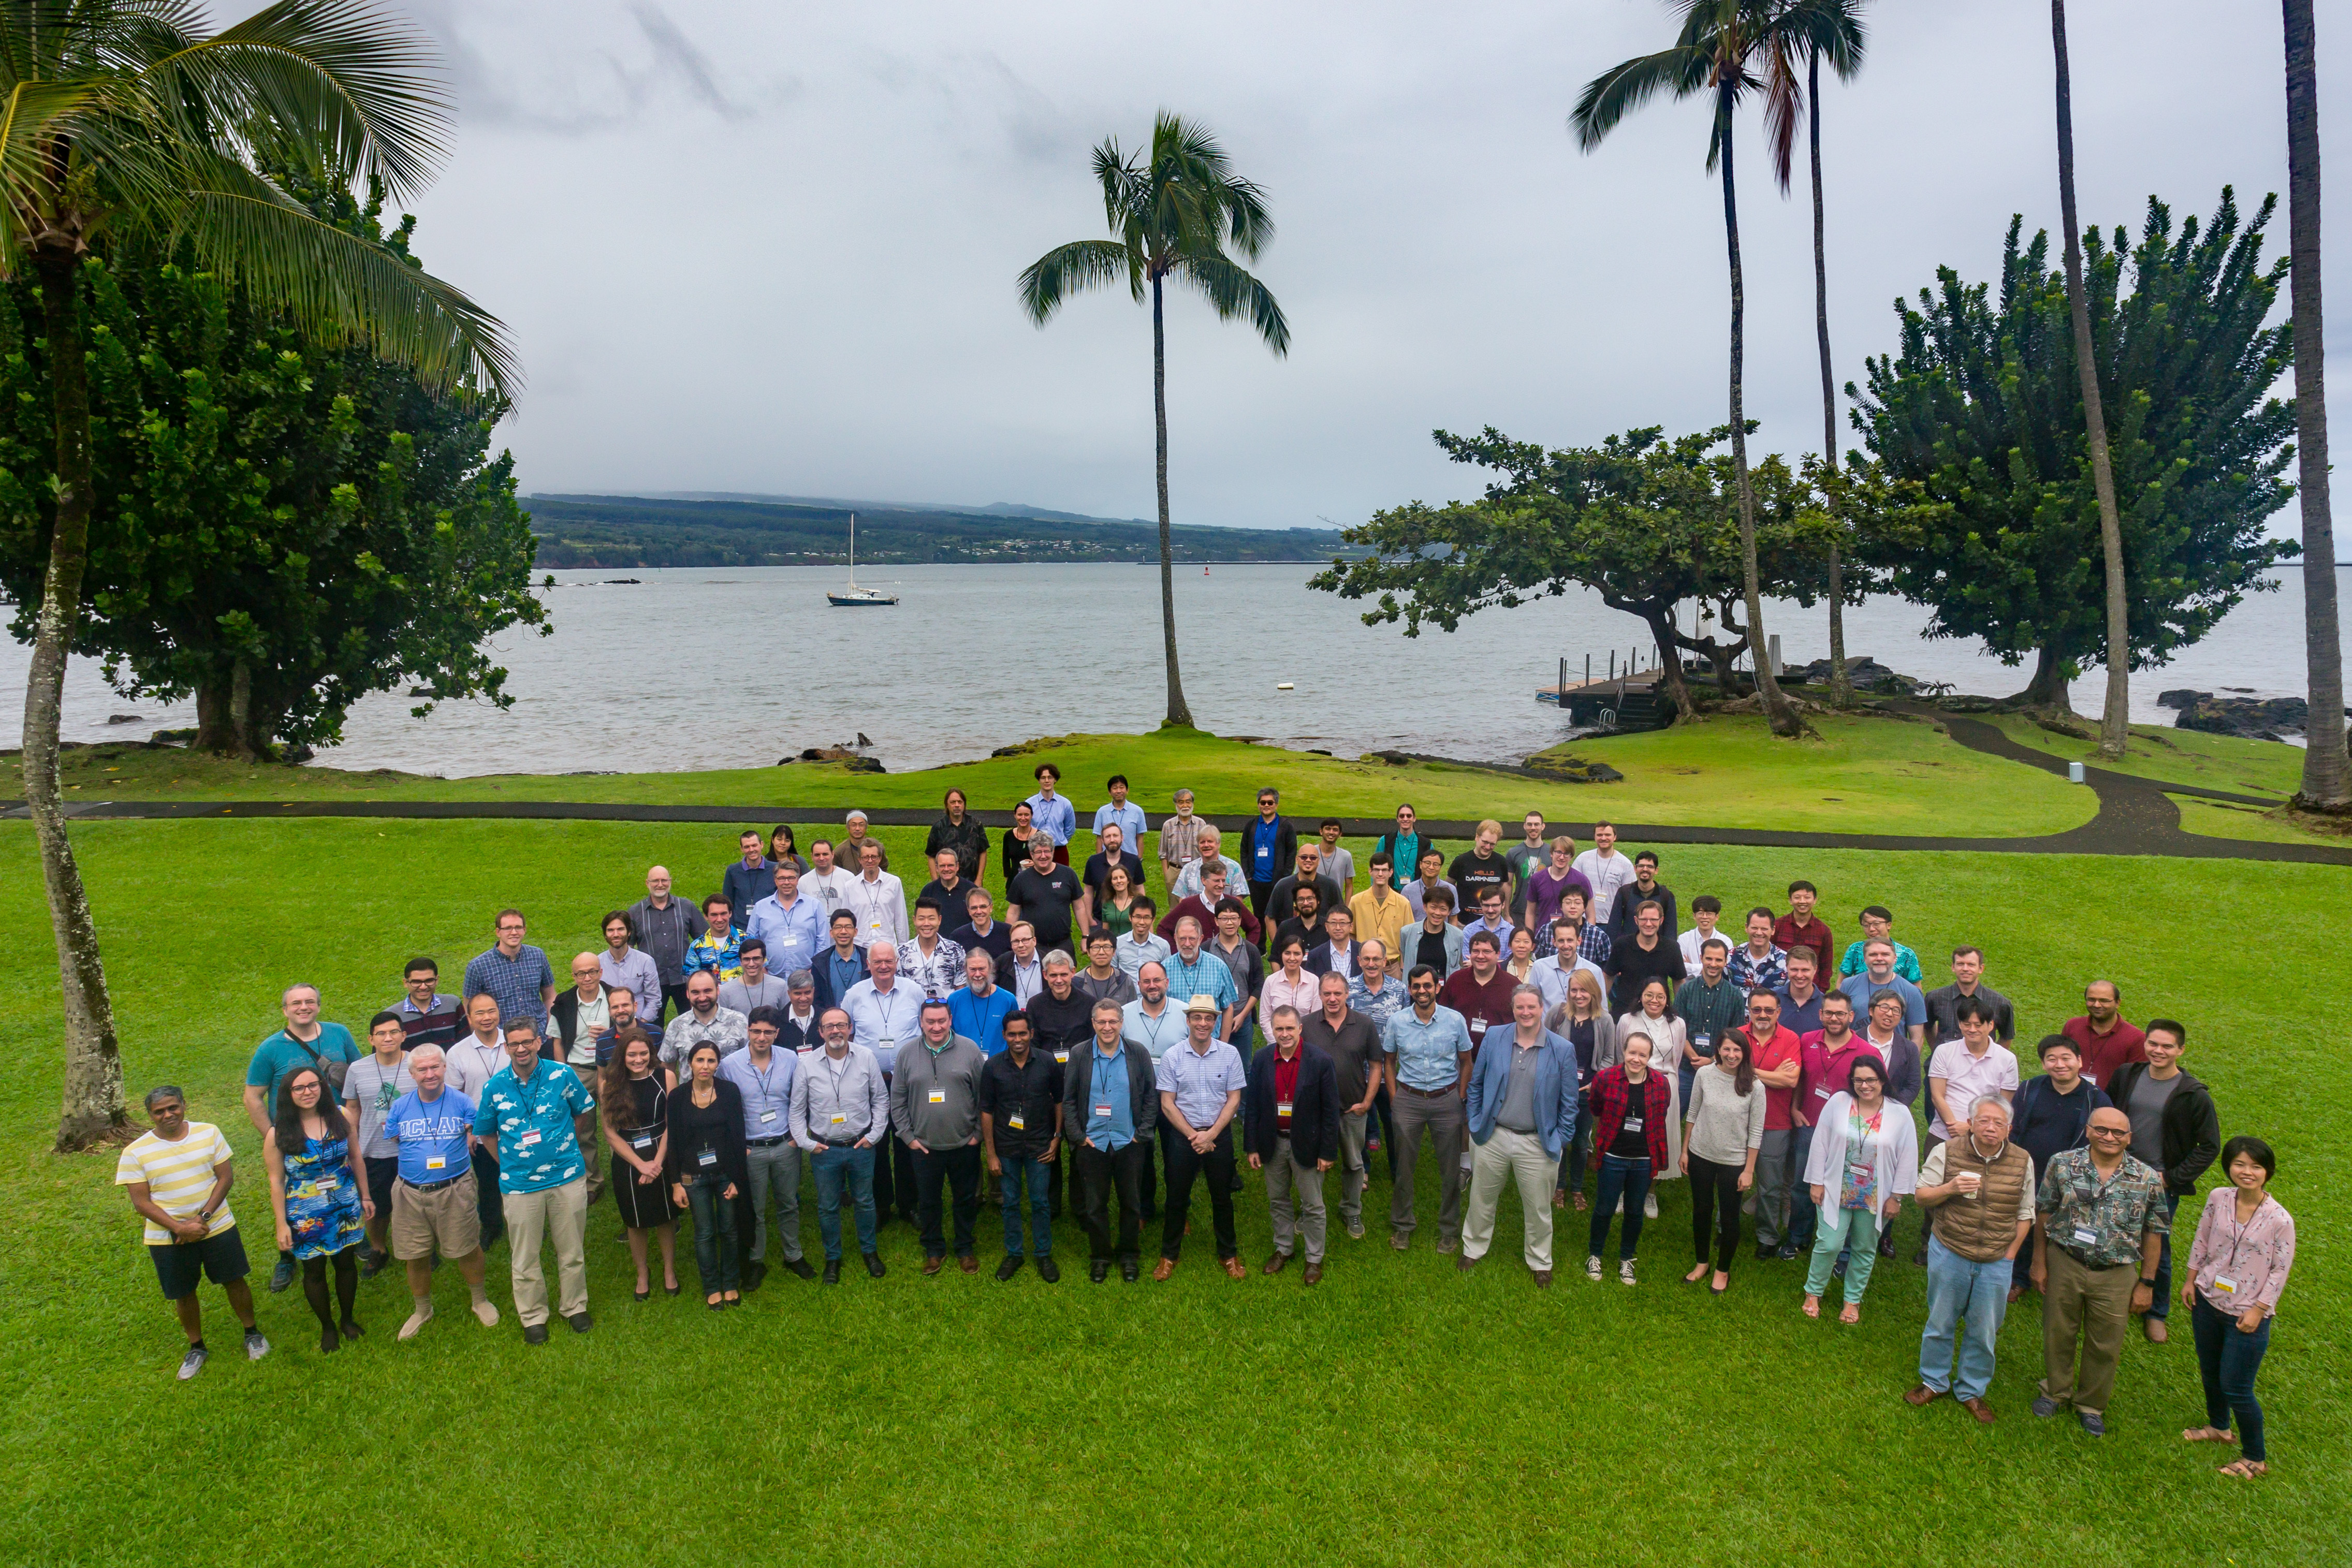 Un grand rassemblement de membres de la collaboration EHT sur la pelouse avec des palmiers et un fond océanique.